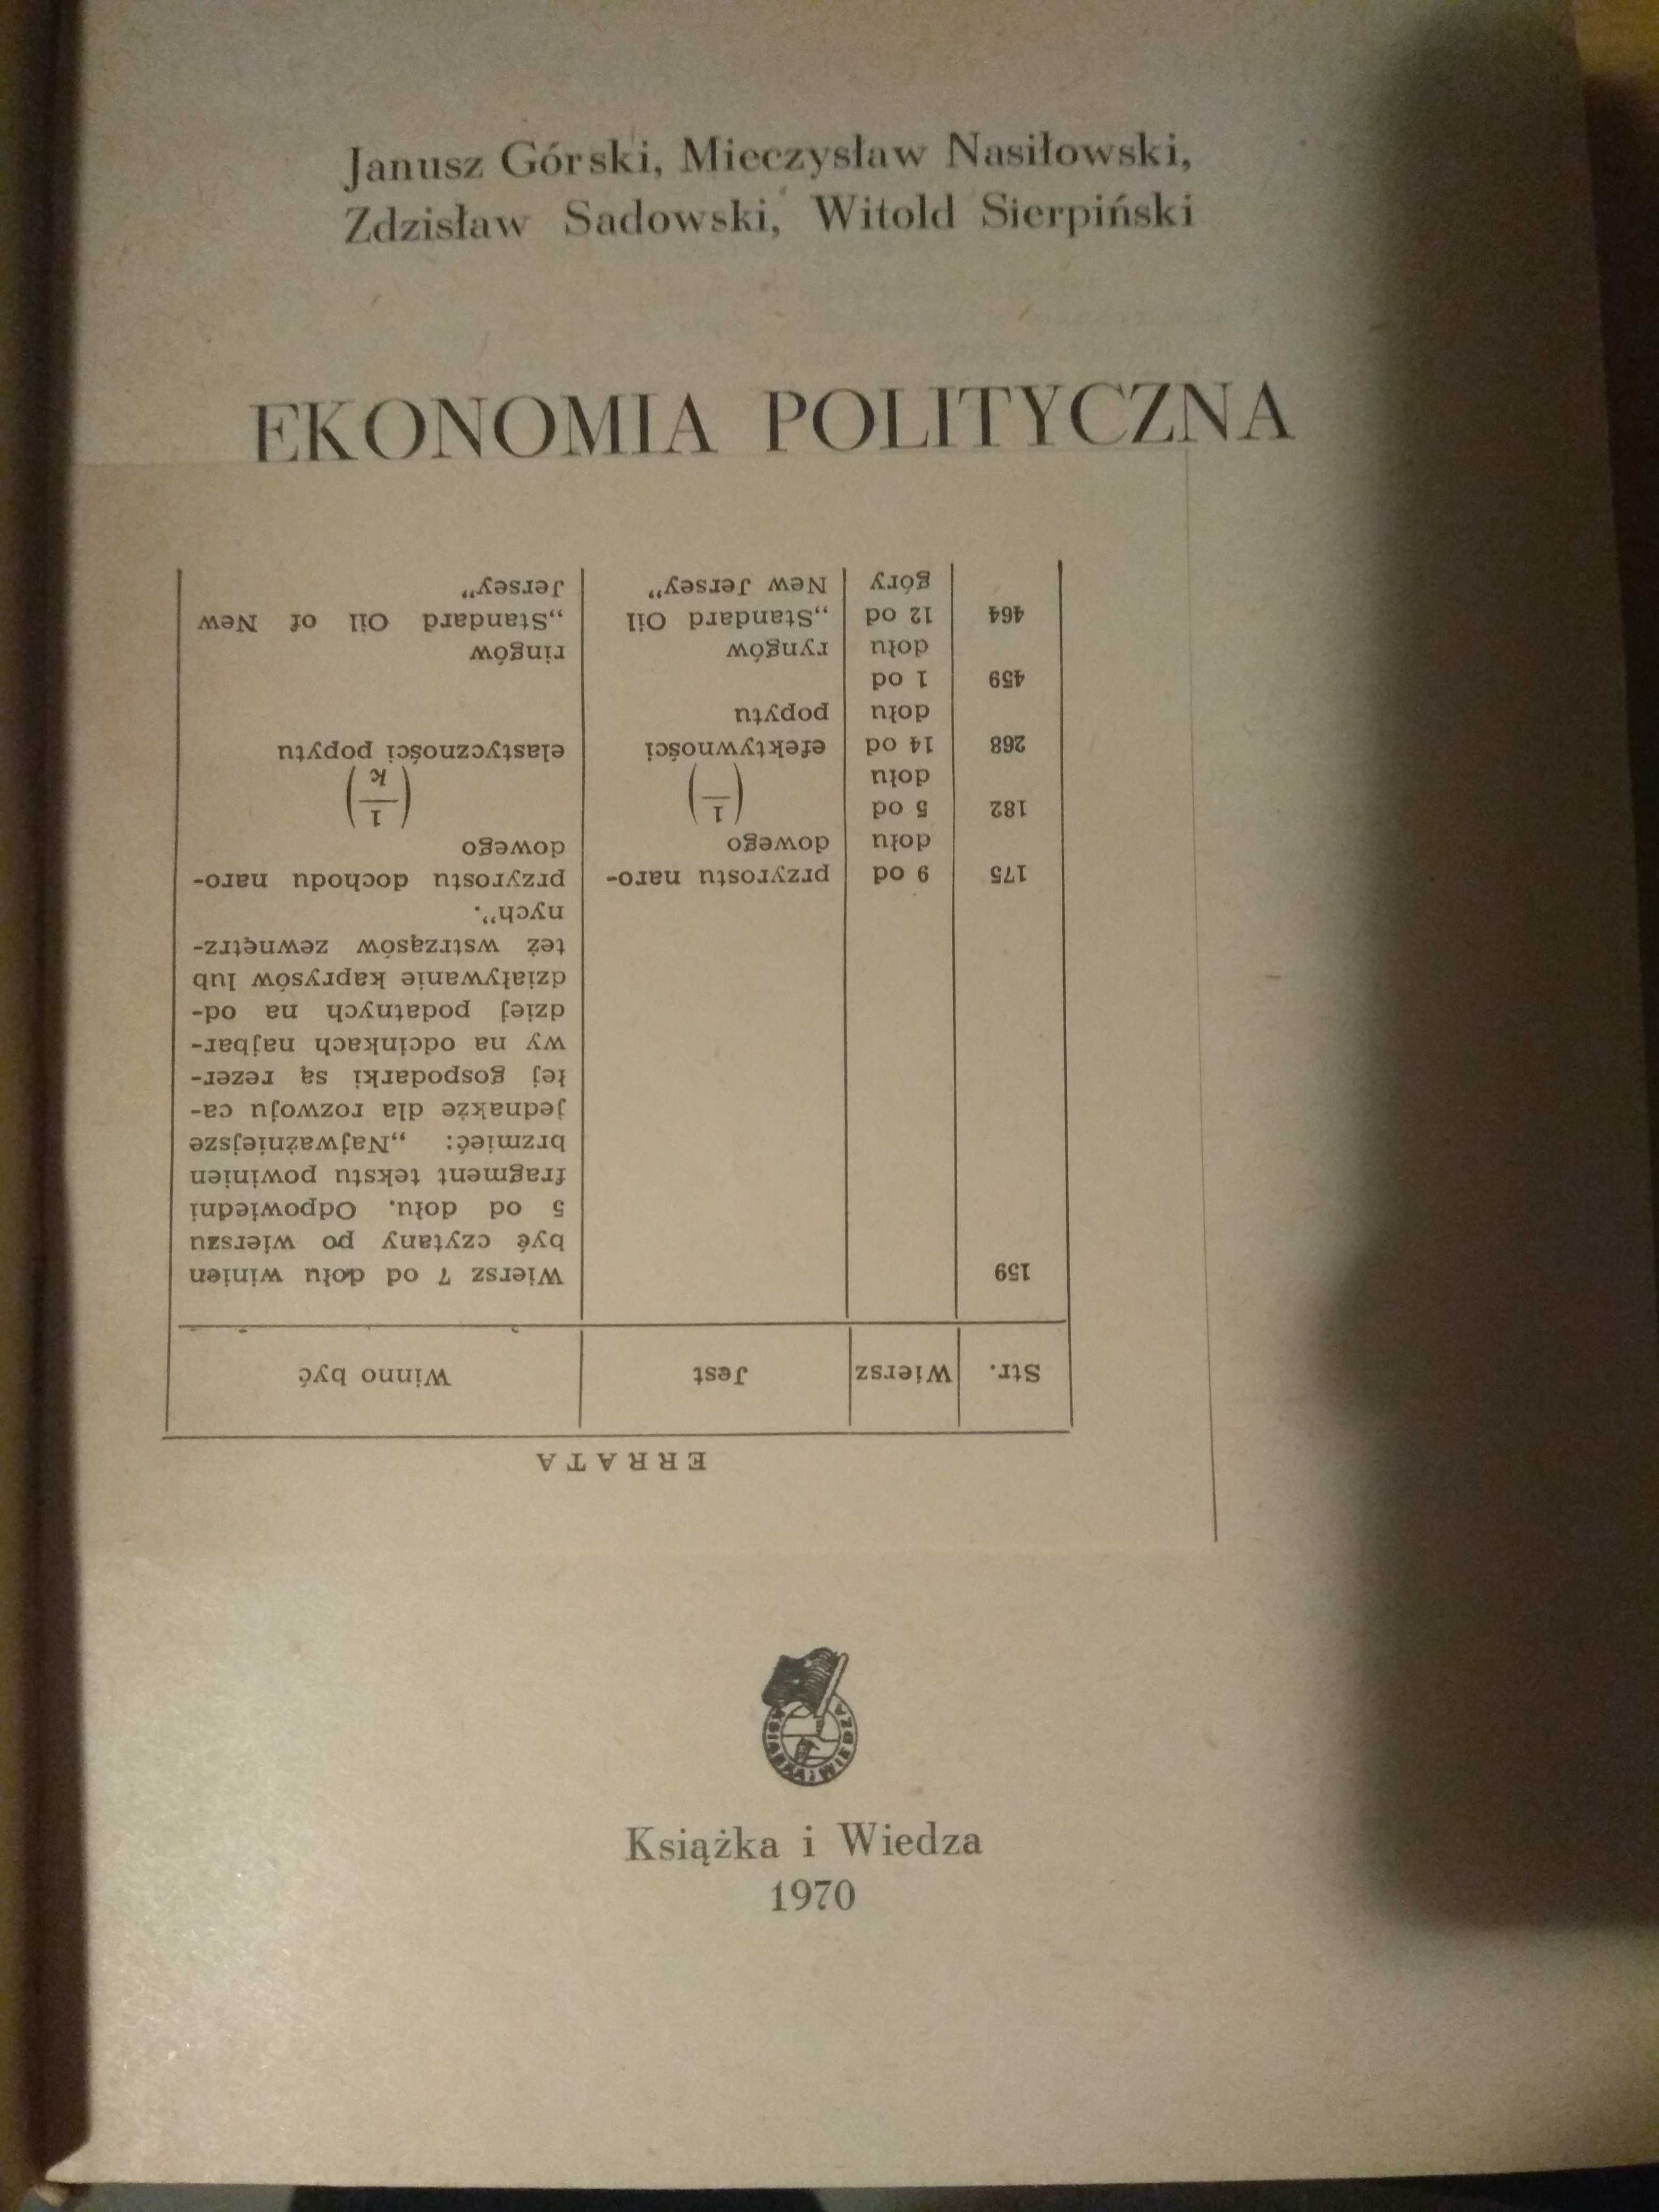 Ekonomia polityczna zarys popularny Górski Nasiłowski